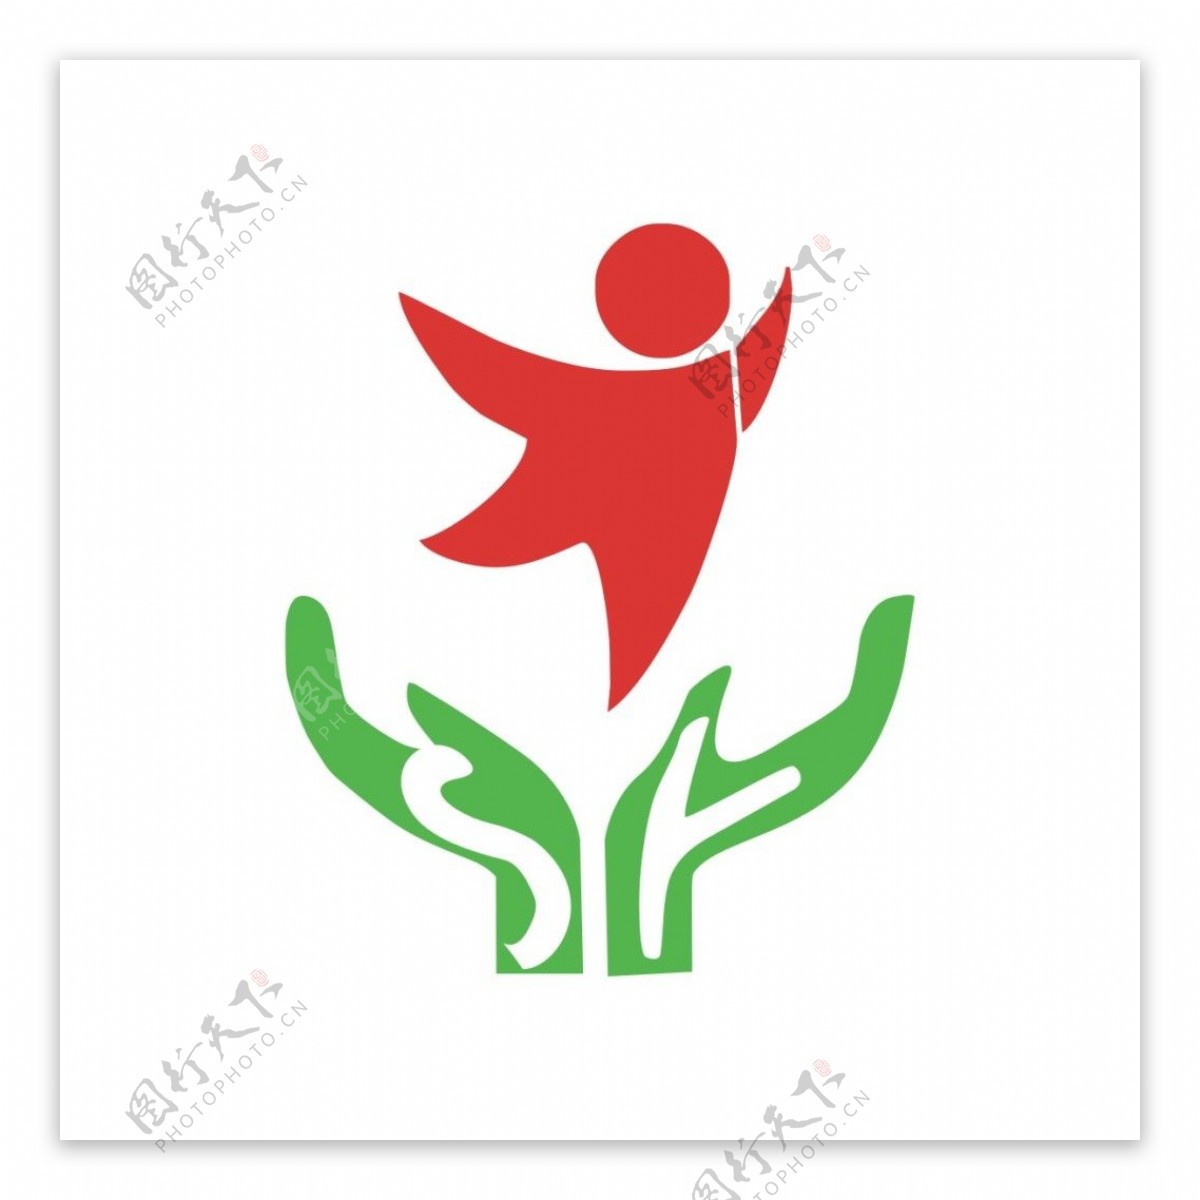 实验幼儿园logo设计园徽标志标识